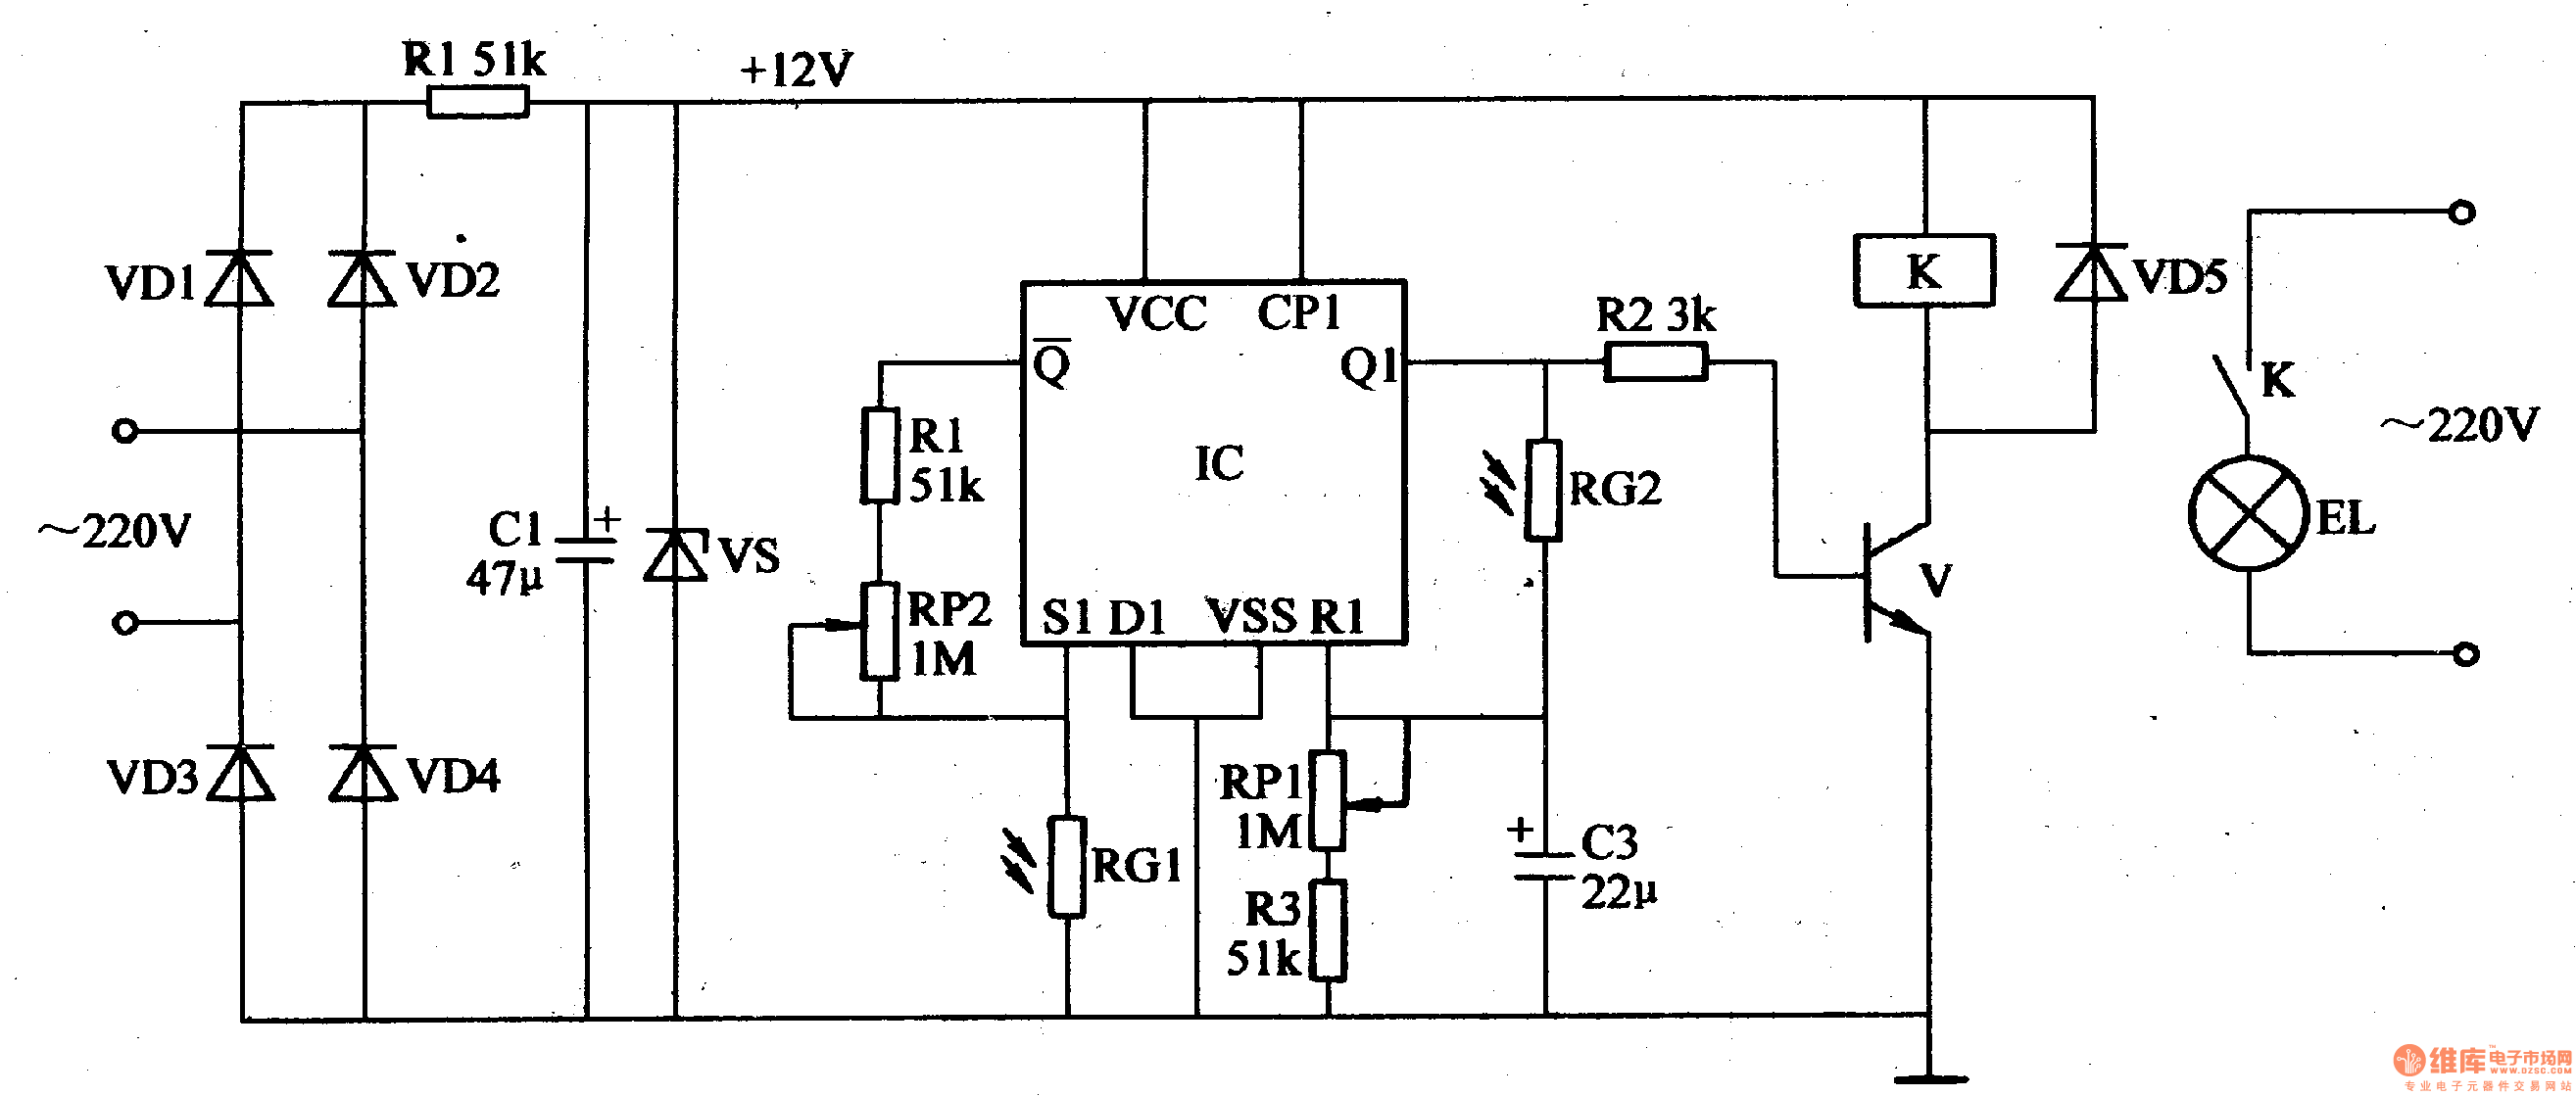 该光控路灯电路由电源电路,光控电路和控制执行电路组成,如图1